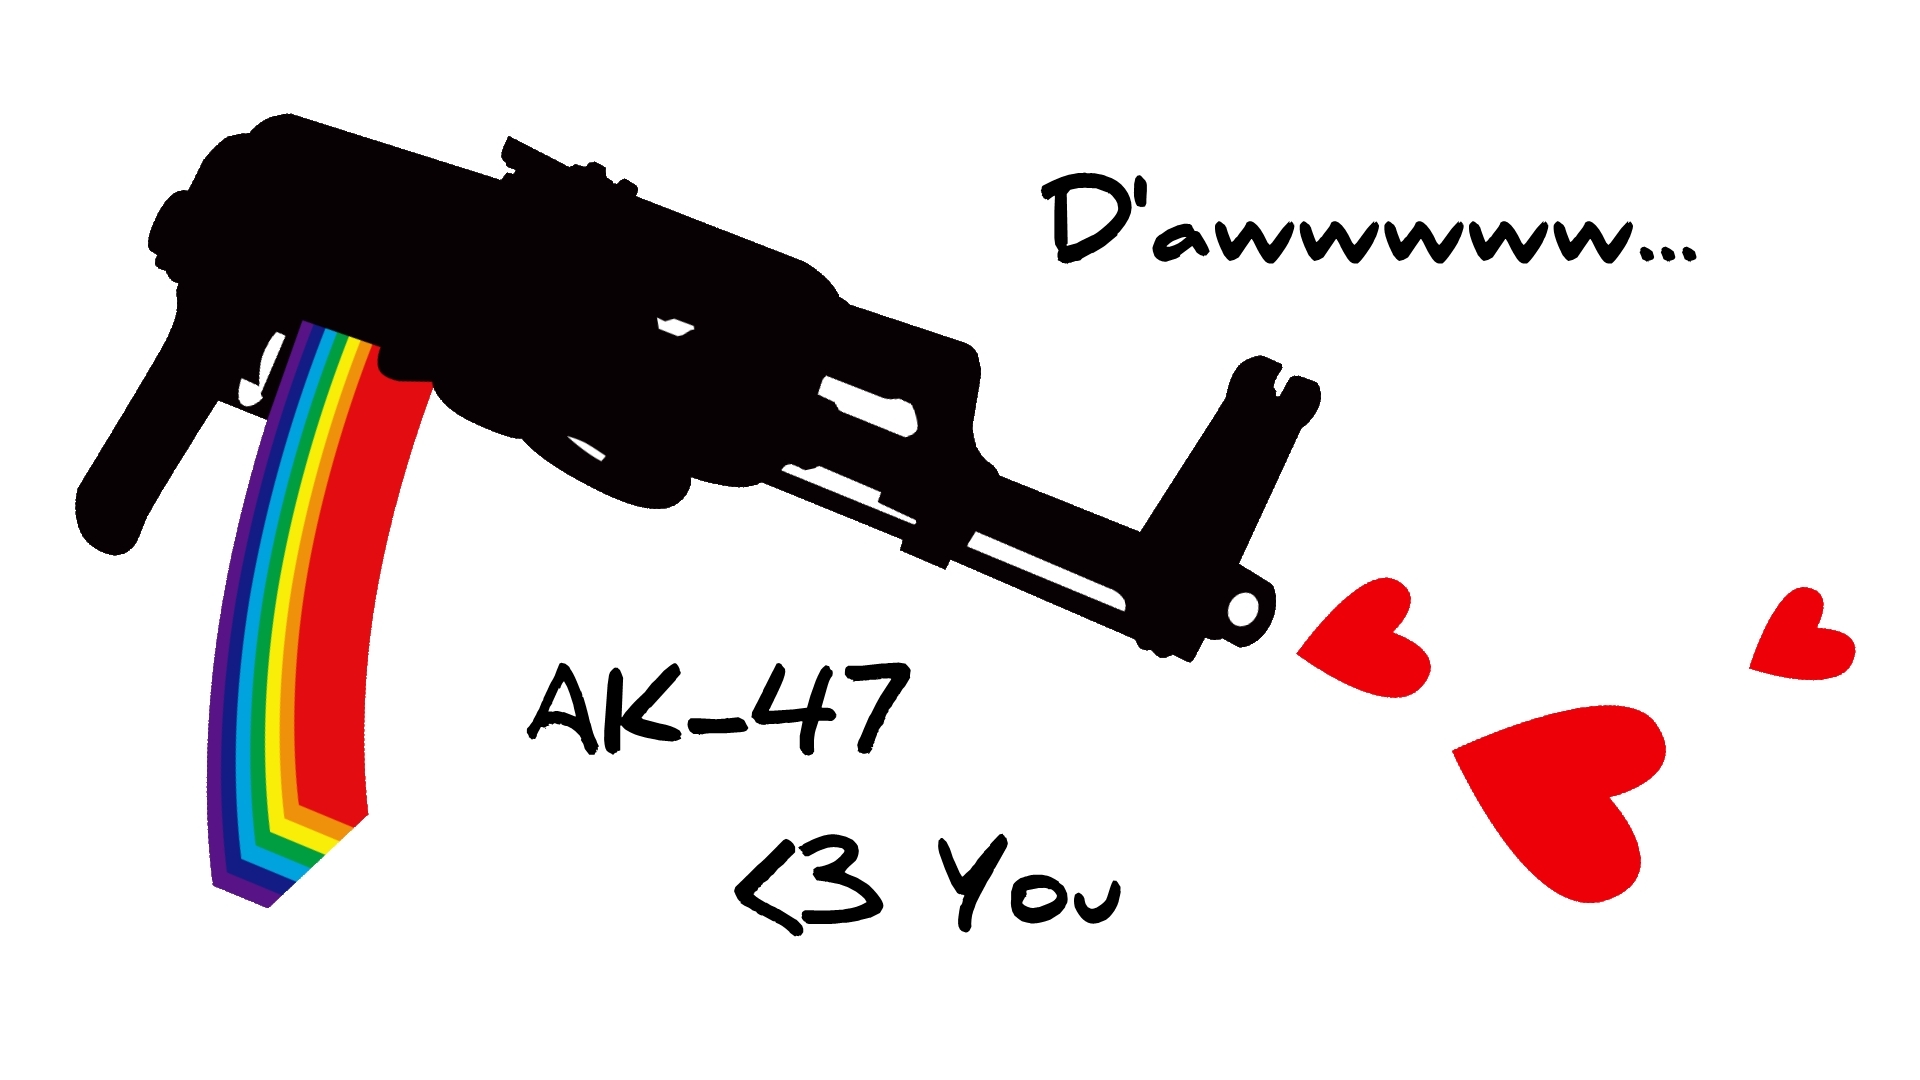 AK-47 - desktop wallpaper